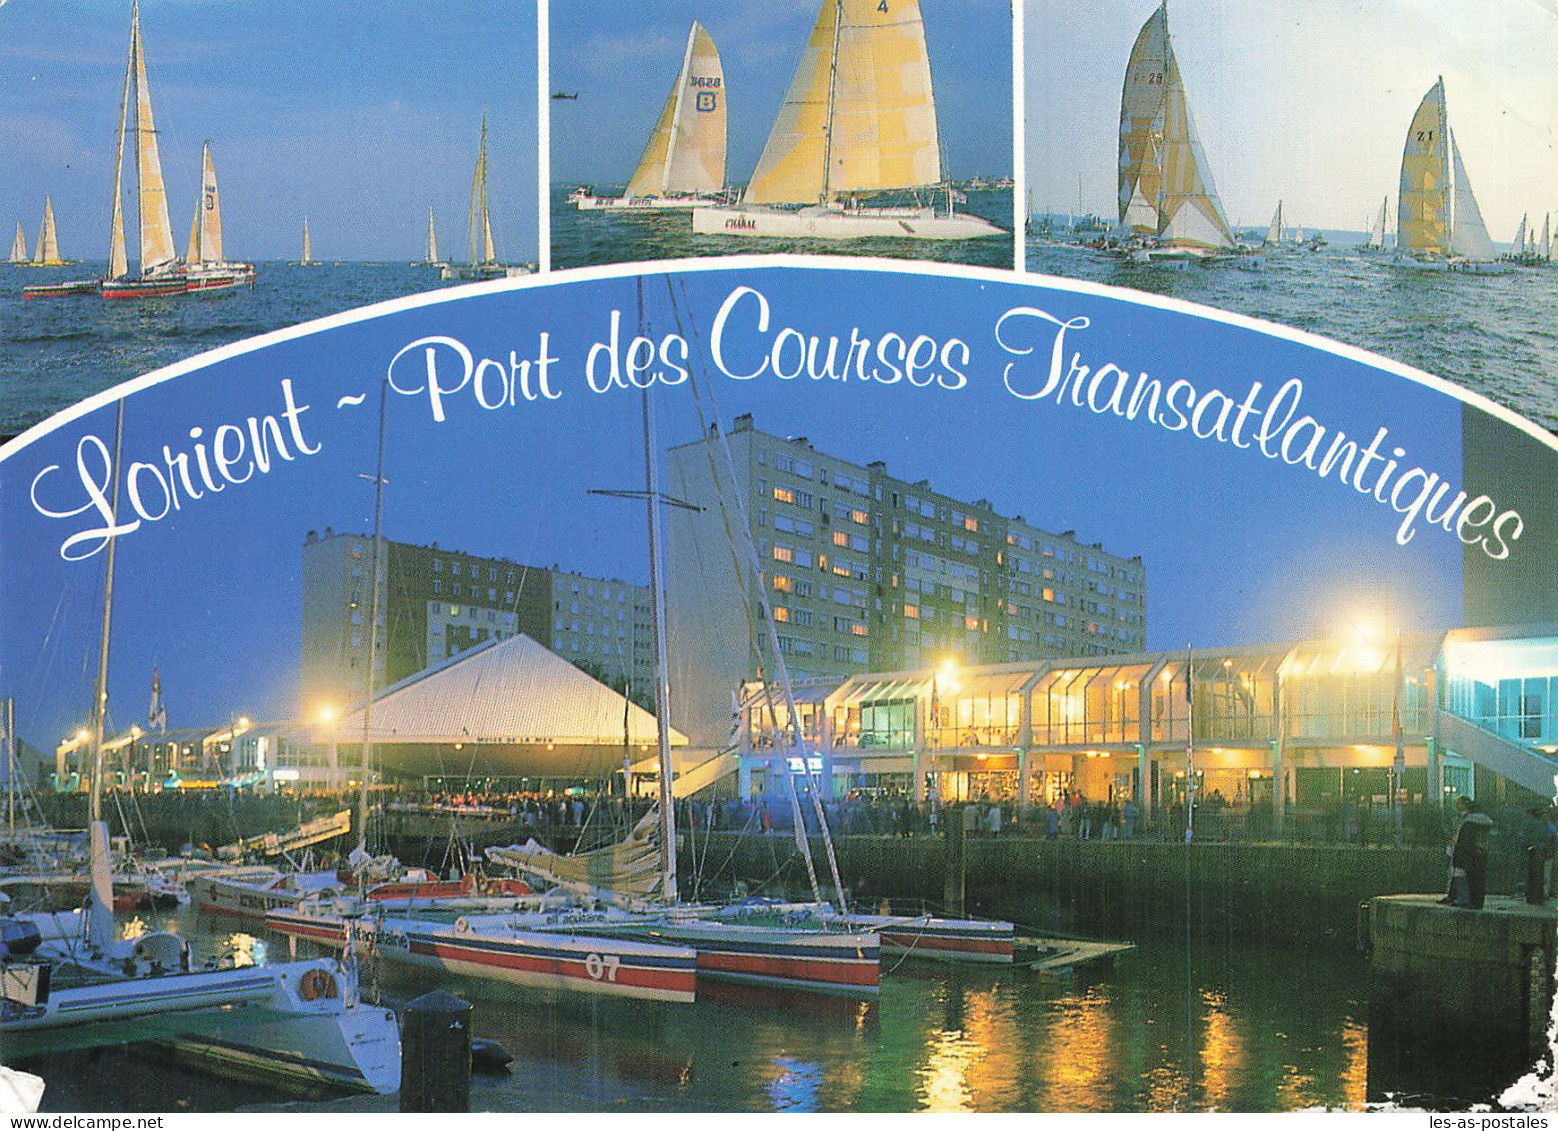 56 LORIENT LE PORT DE PLAISANCE - Lorient